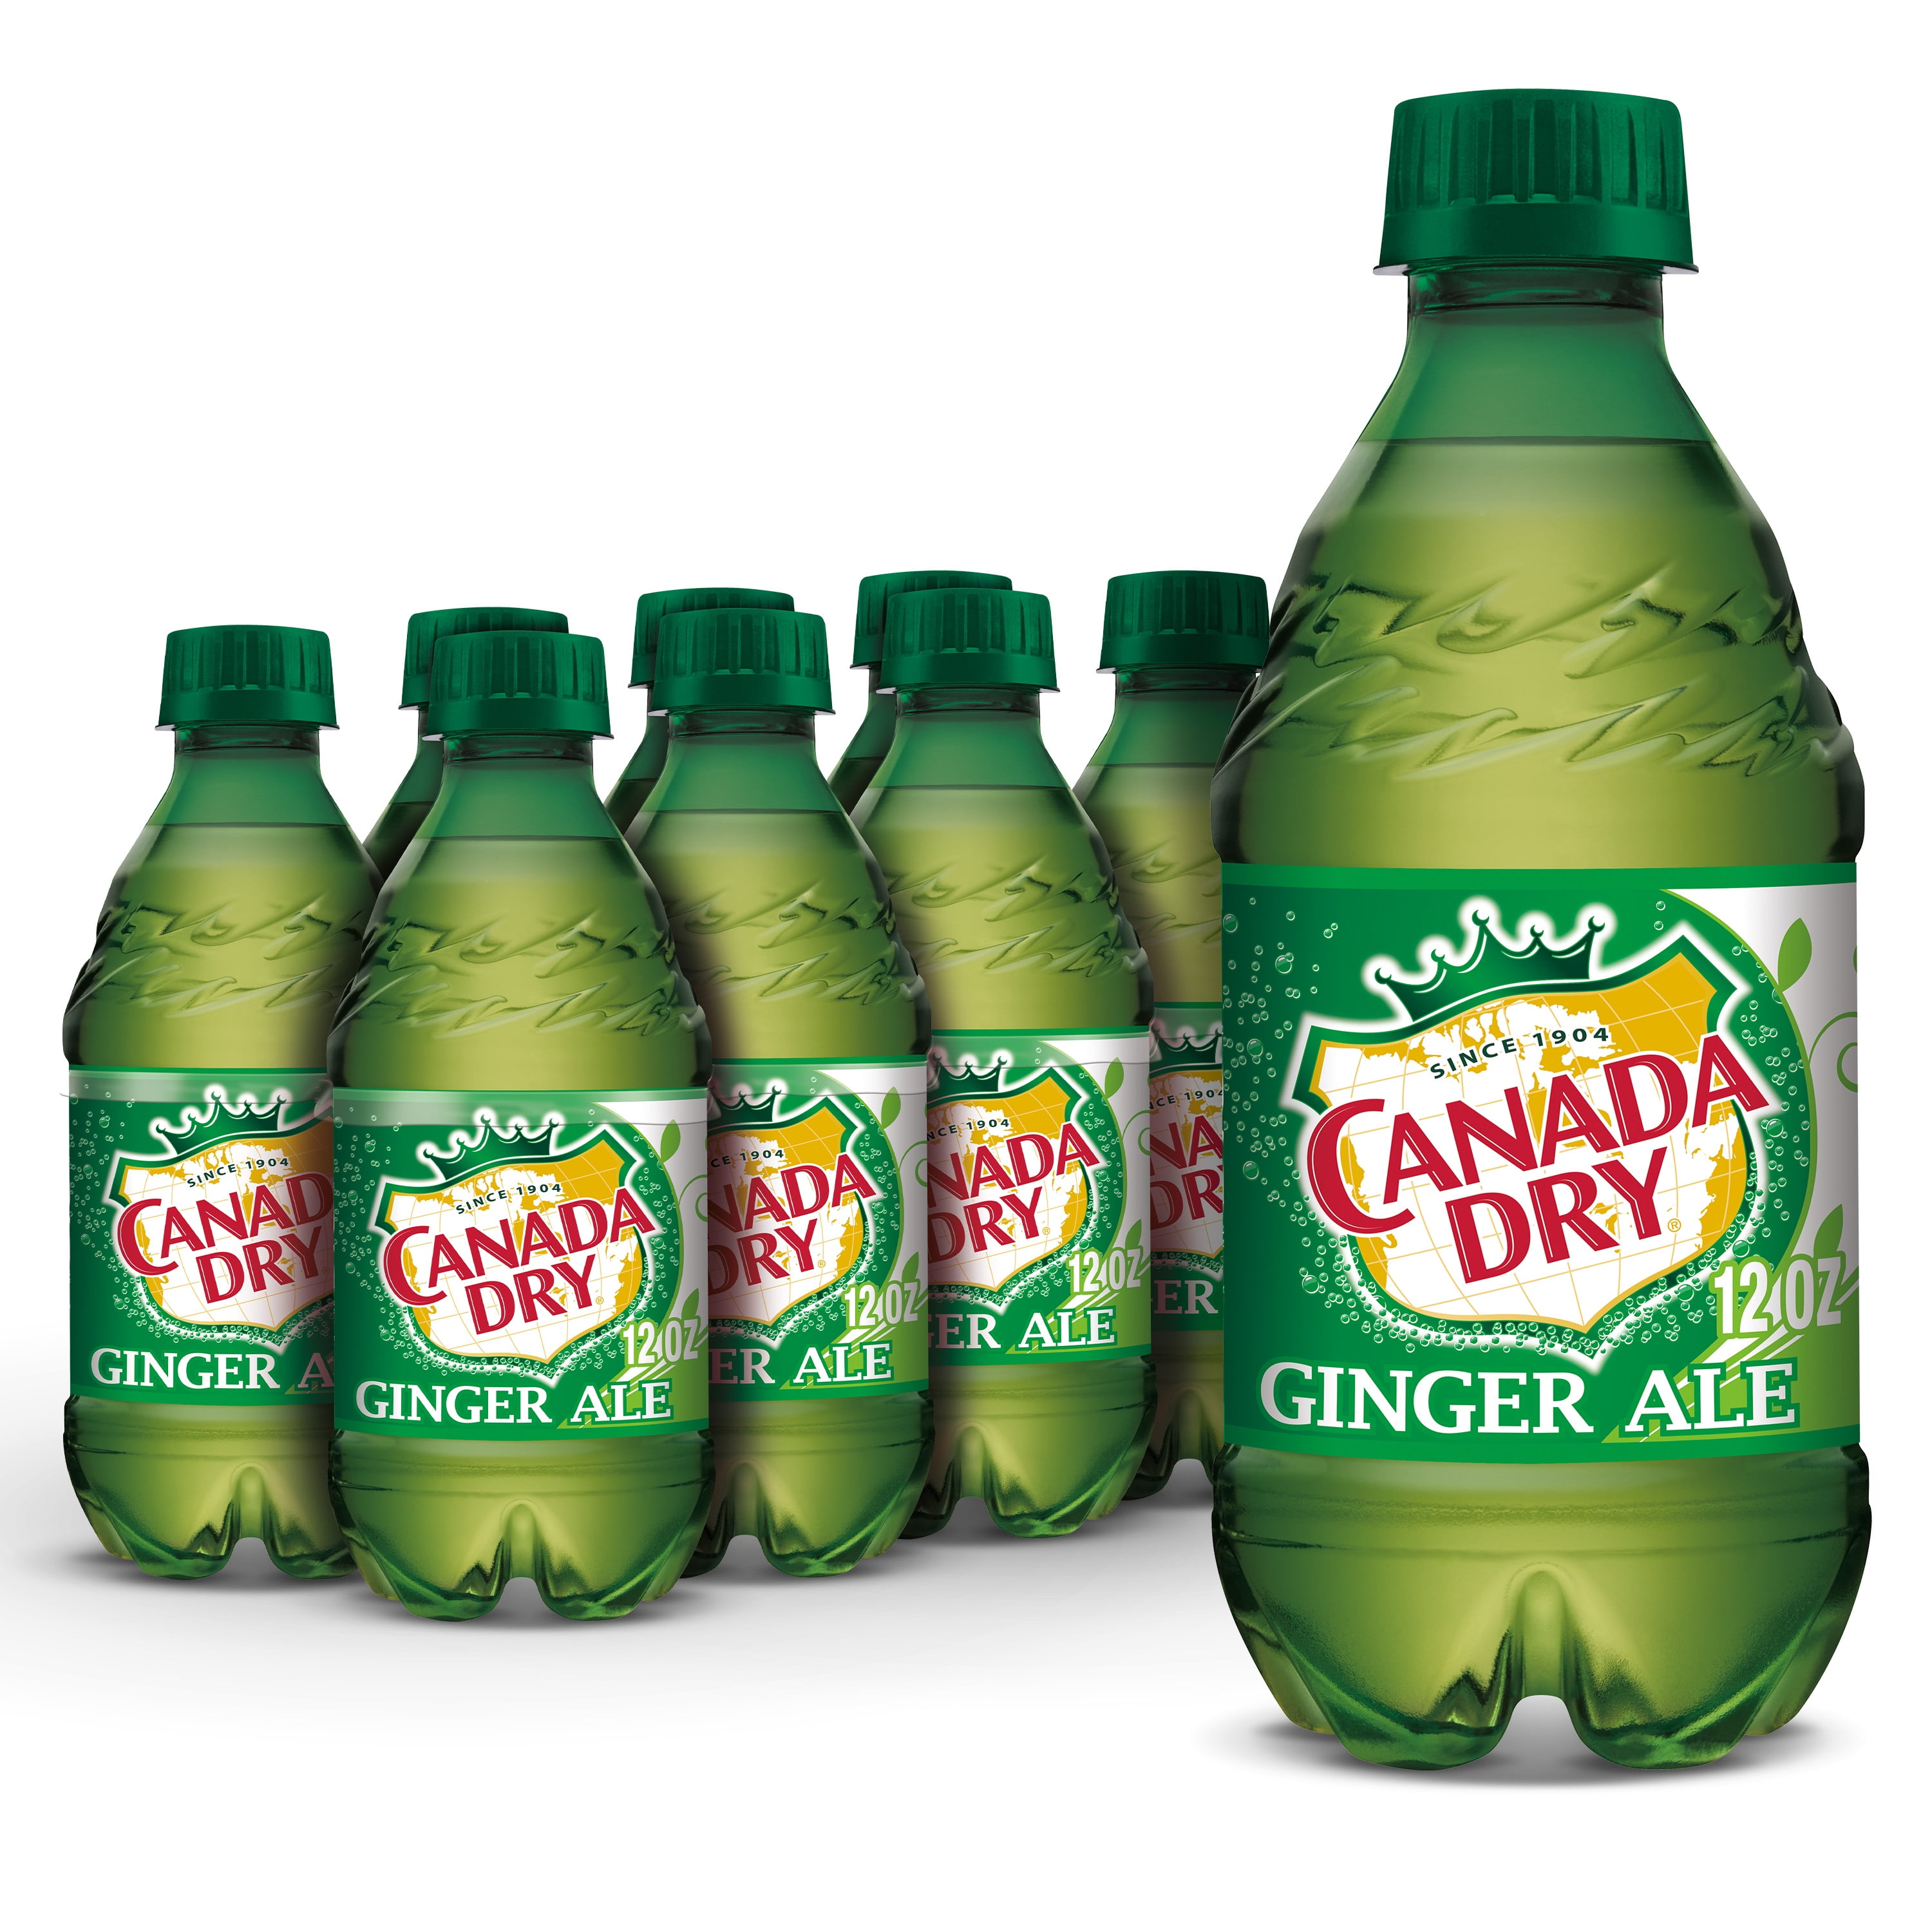 Big Ben's Ginger Ale - 12 oz (12 Glass bottles)